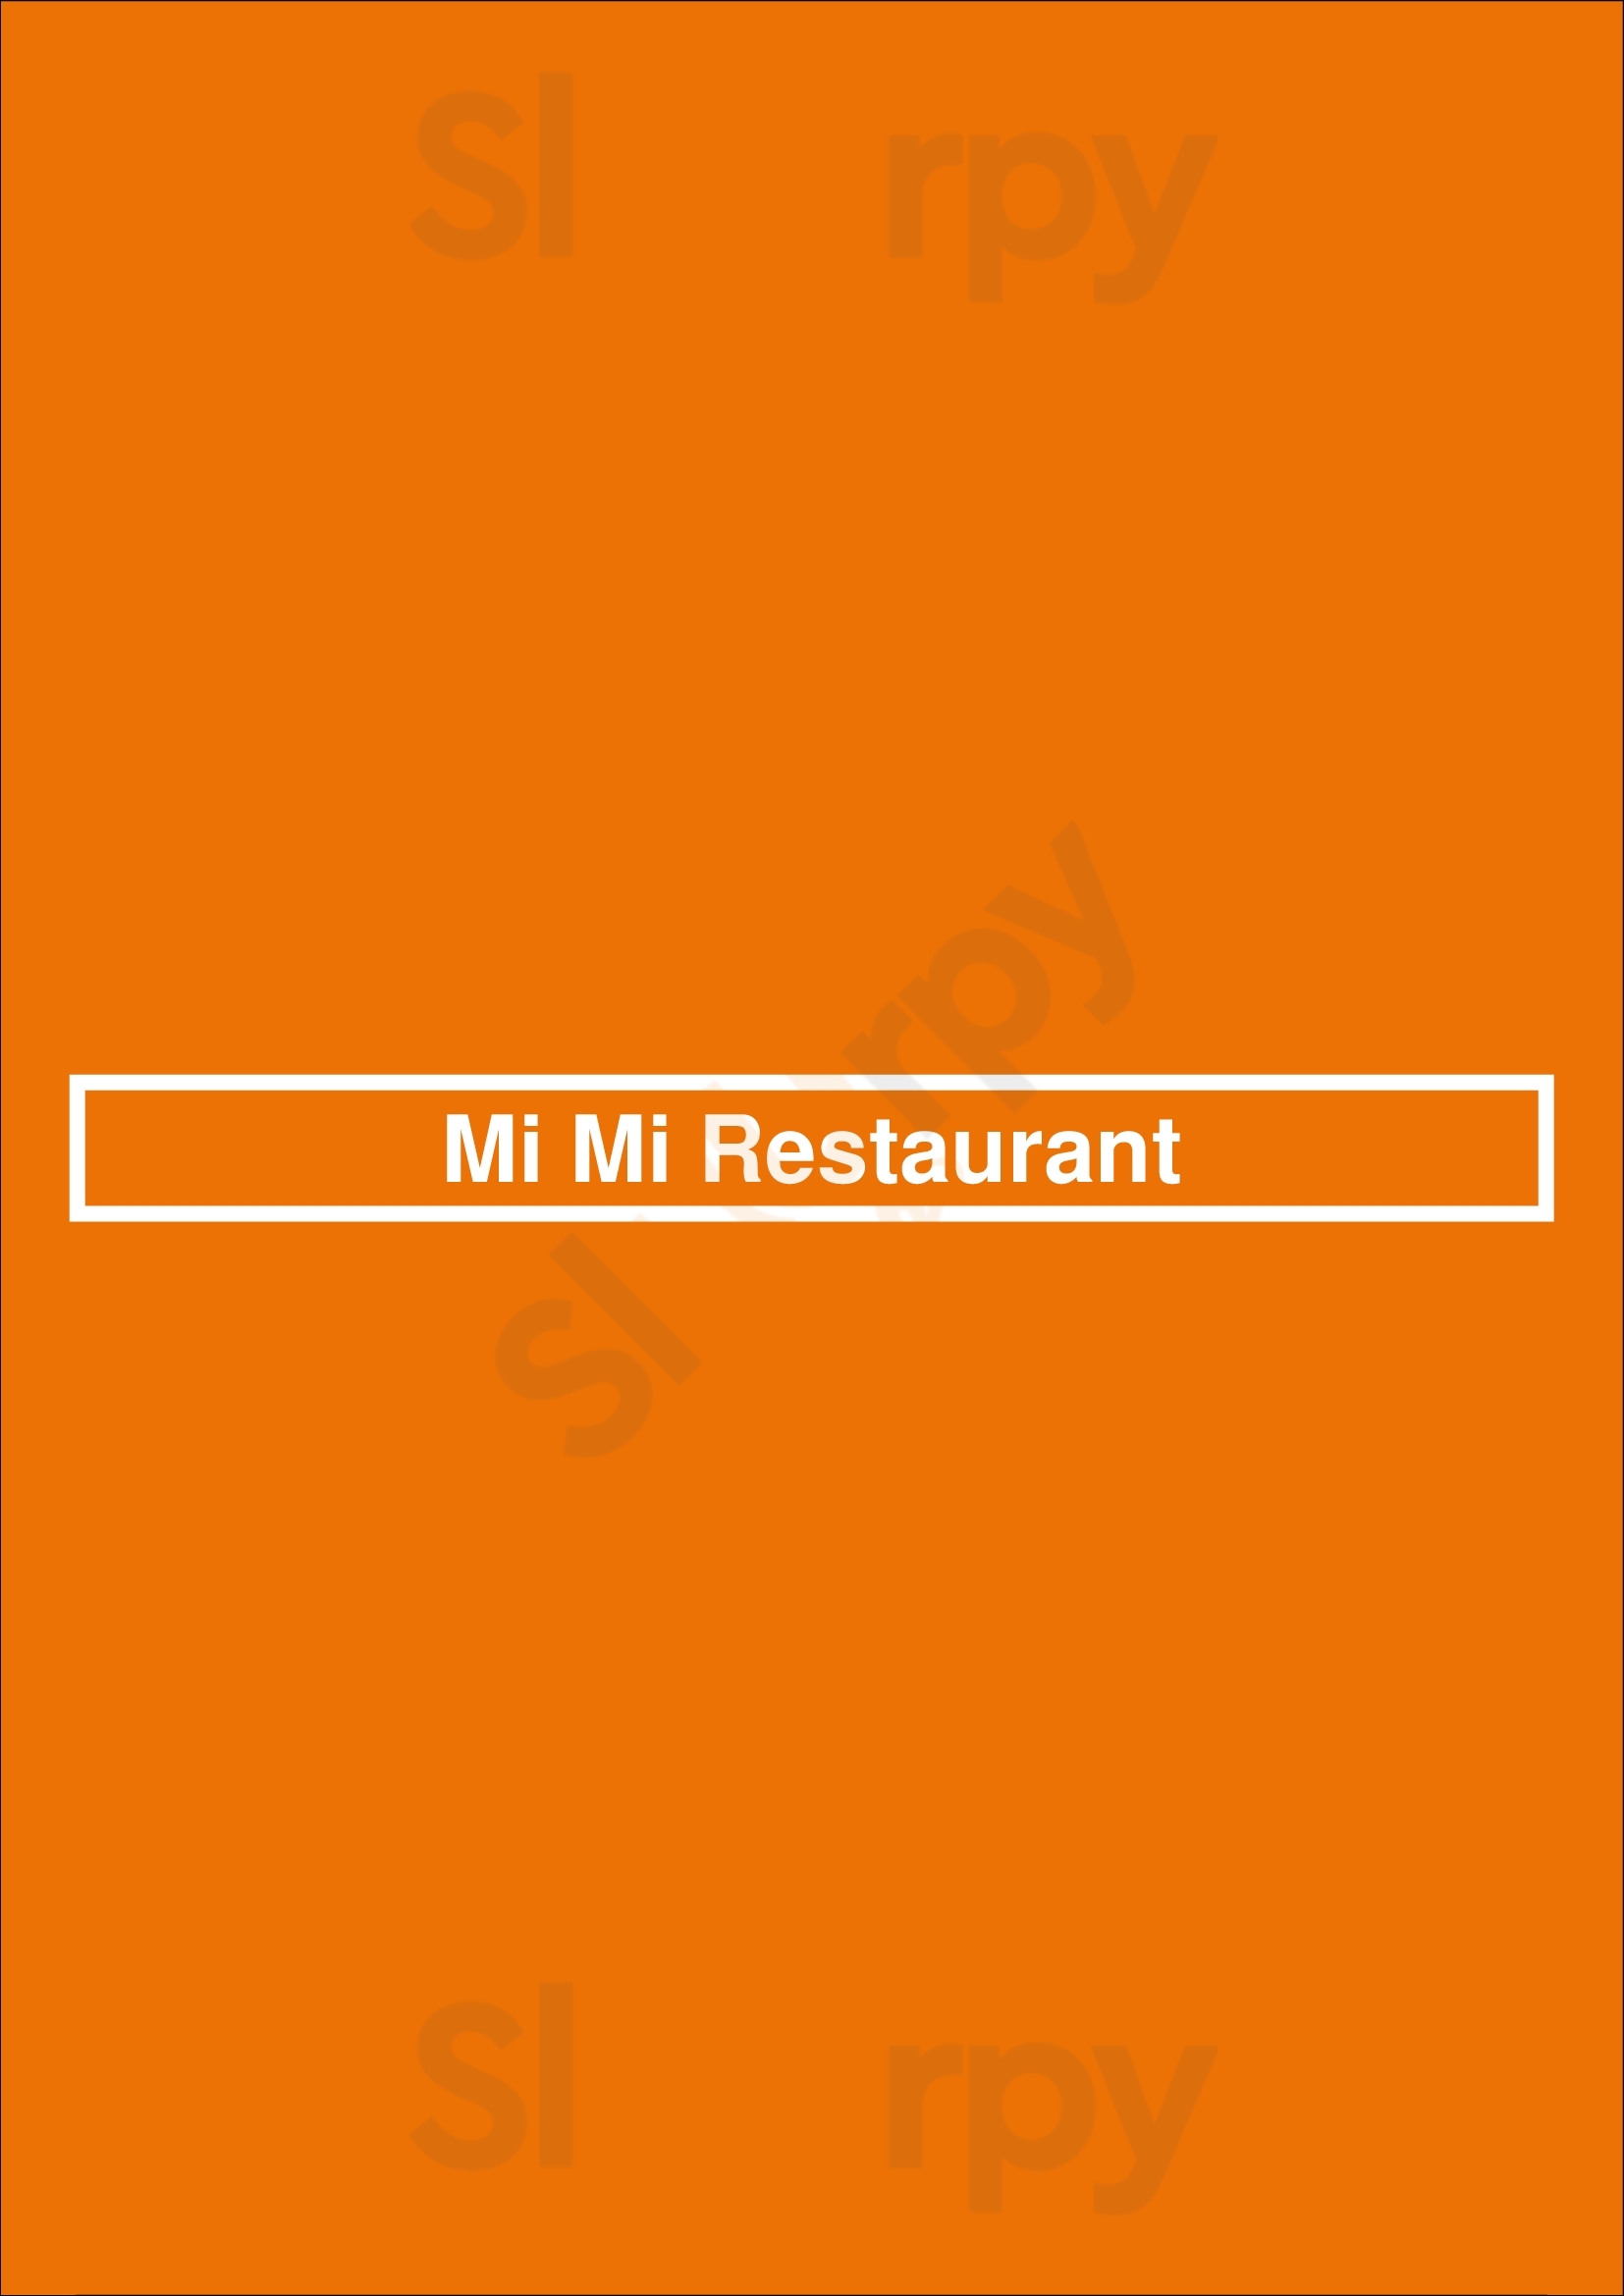 Mi Mi Restaurant Toronto Menu - 1